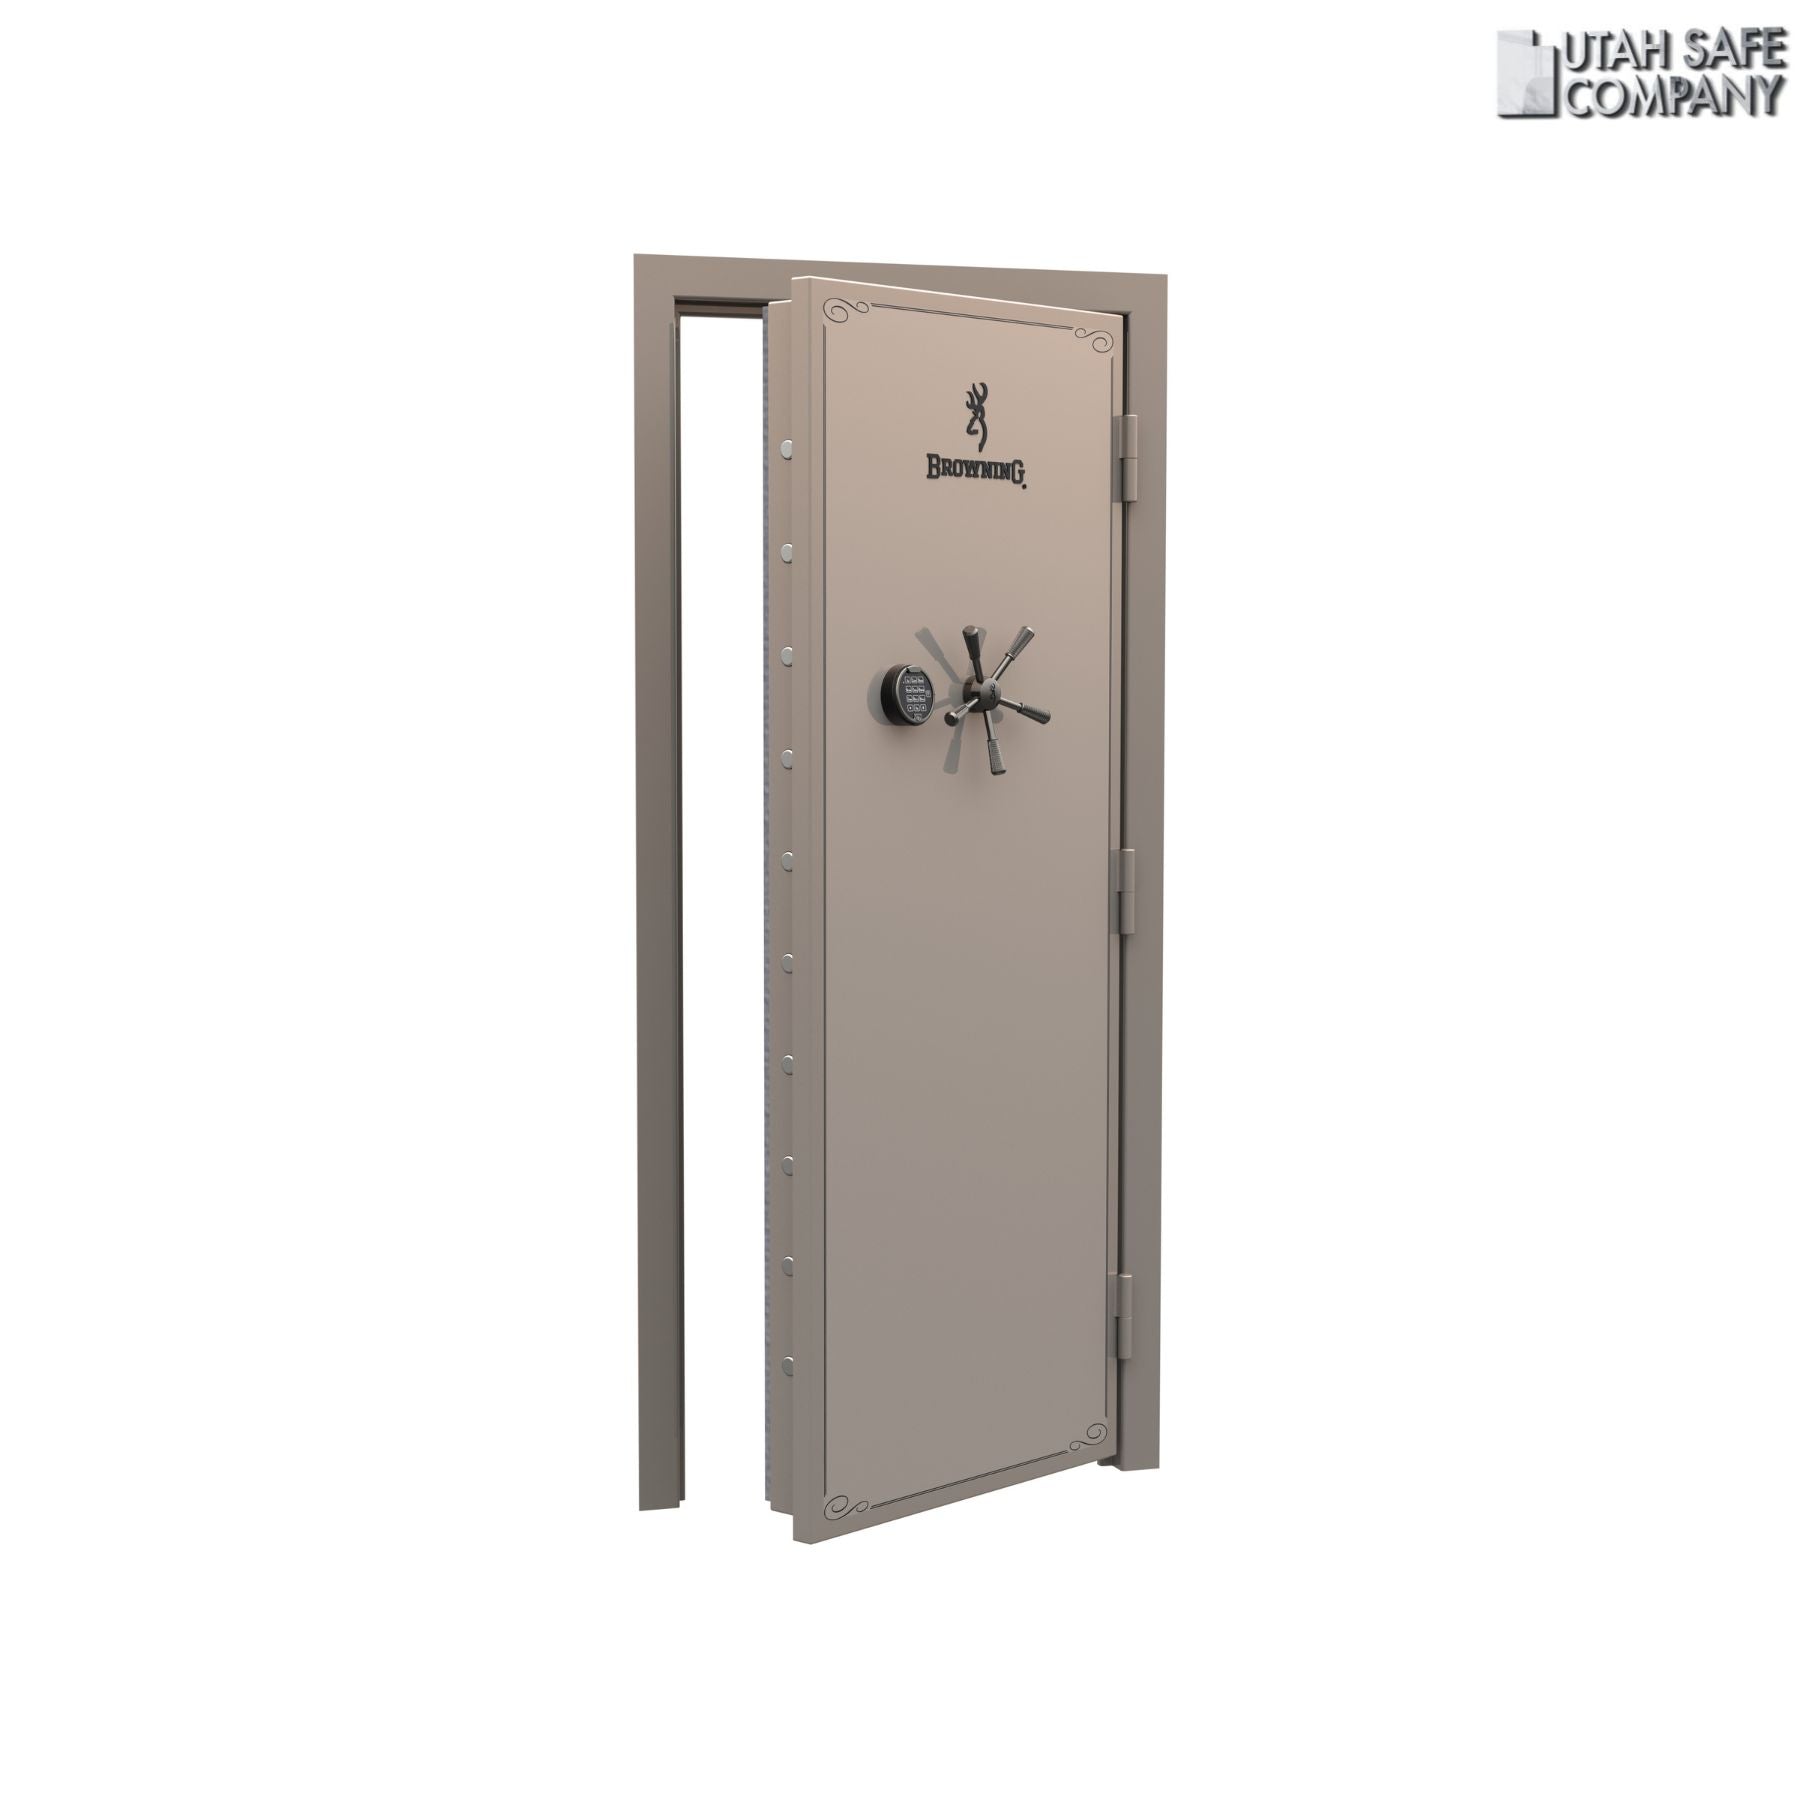 Browning Standard Out-Swing Vault Door